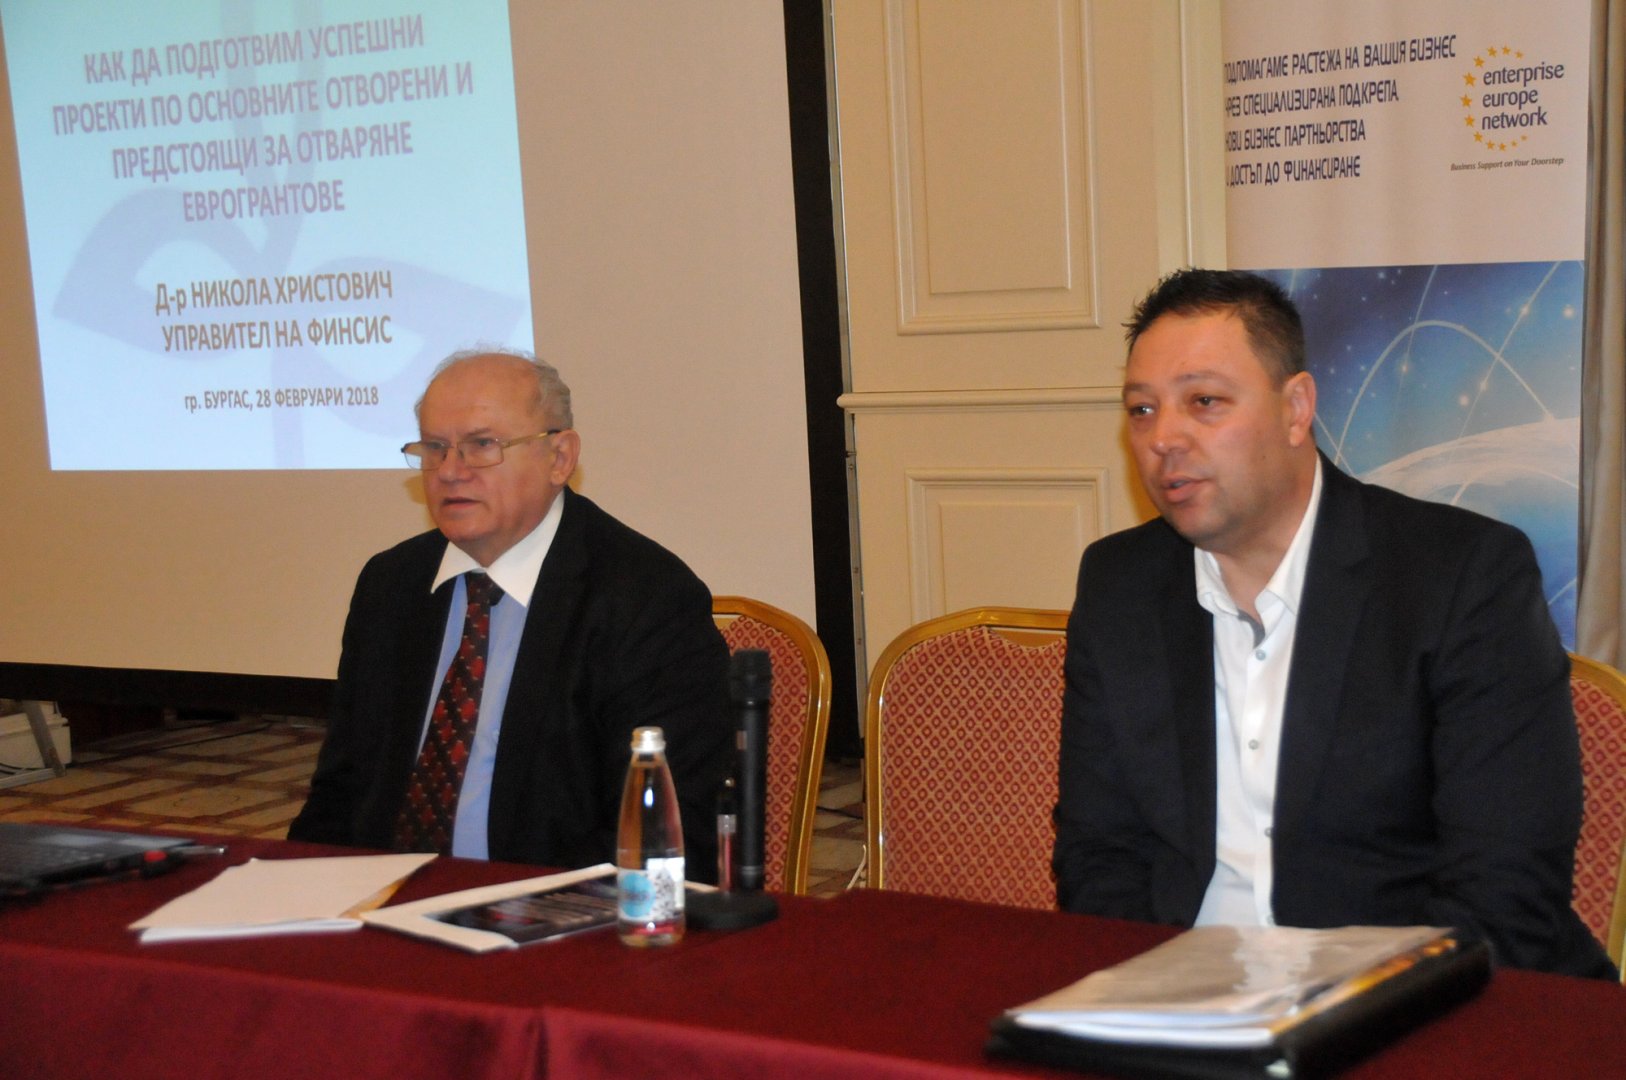 Д-р Христович /вляво/ направи презентация пред присъстващите на семинара. Снимки Лина Главинова